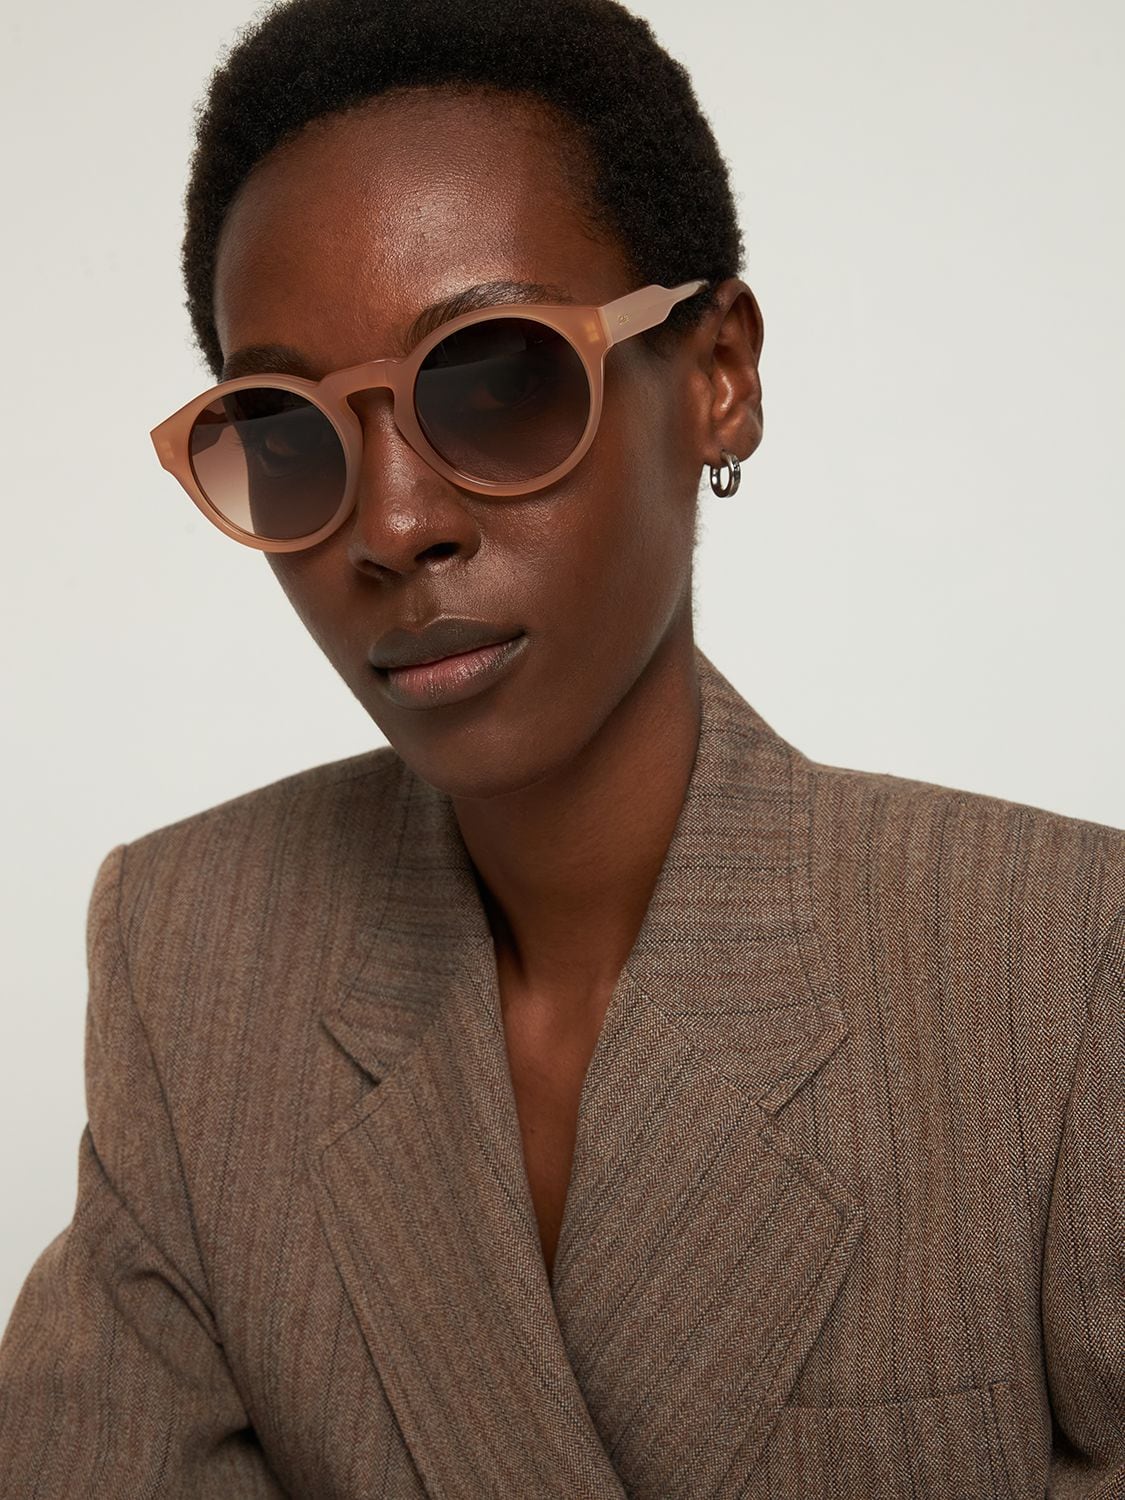 Shop Chloé Xena Round Bio-acetate Sunglasses In Nude,brown